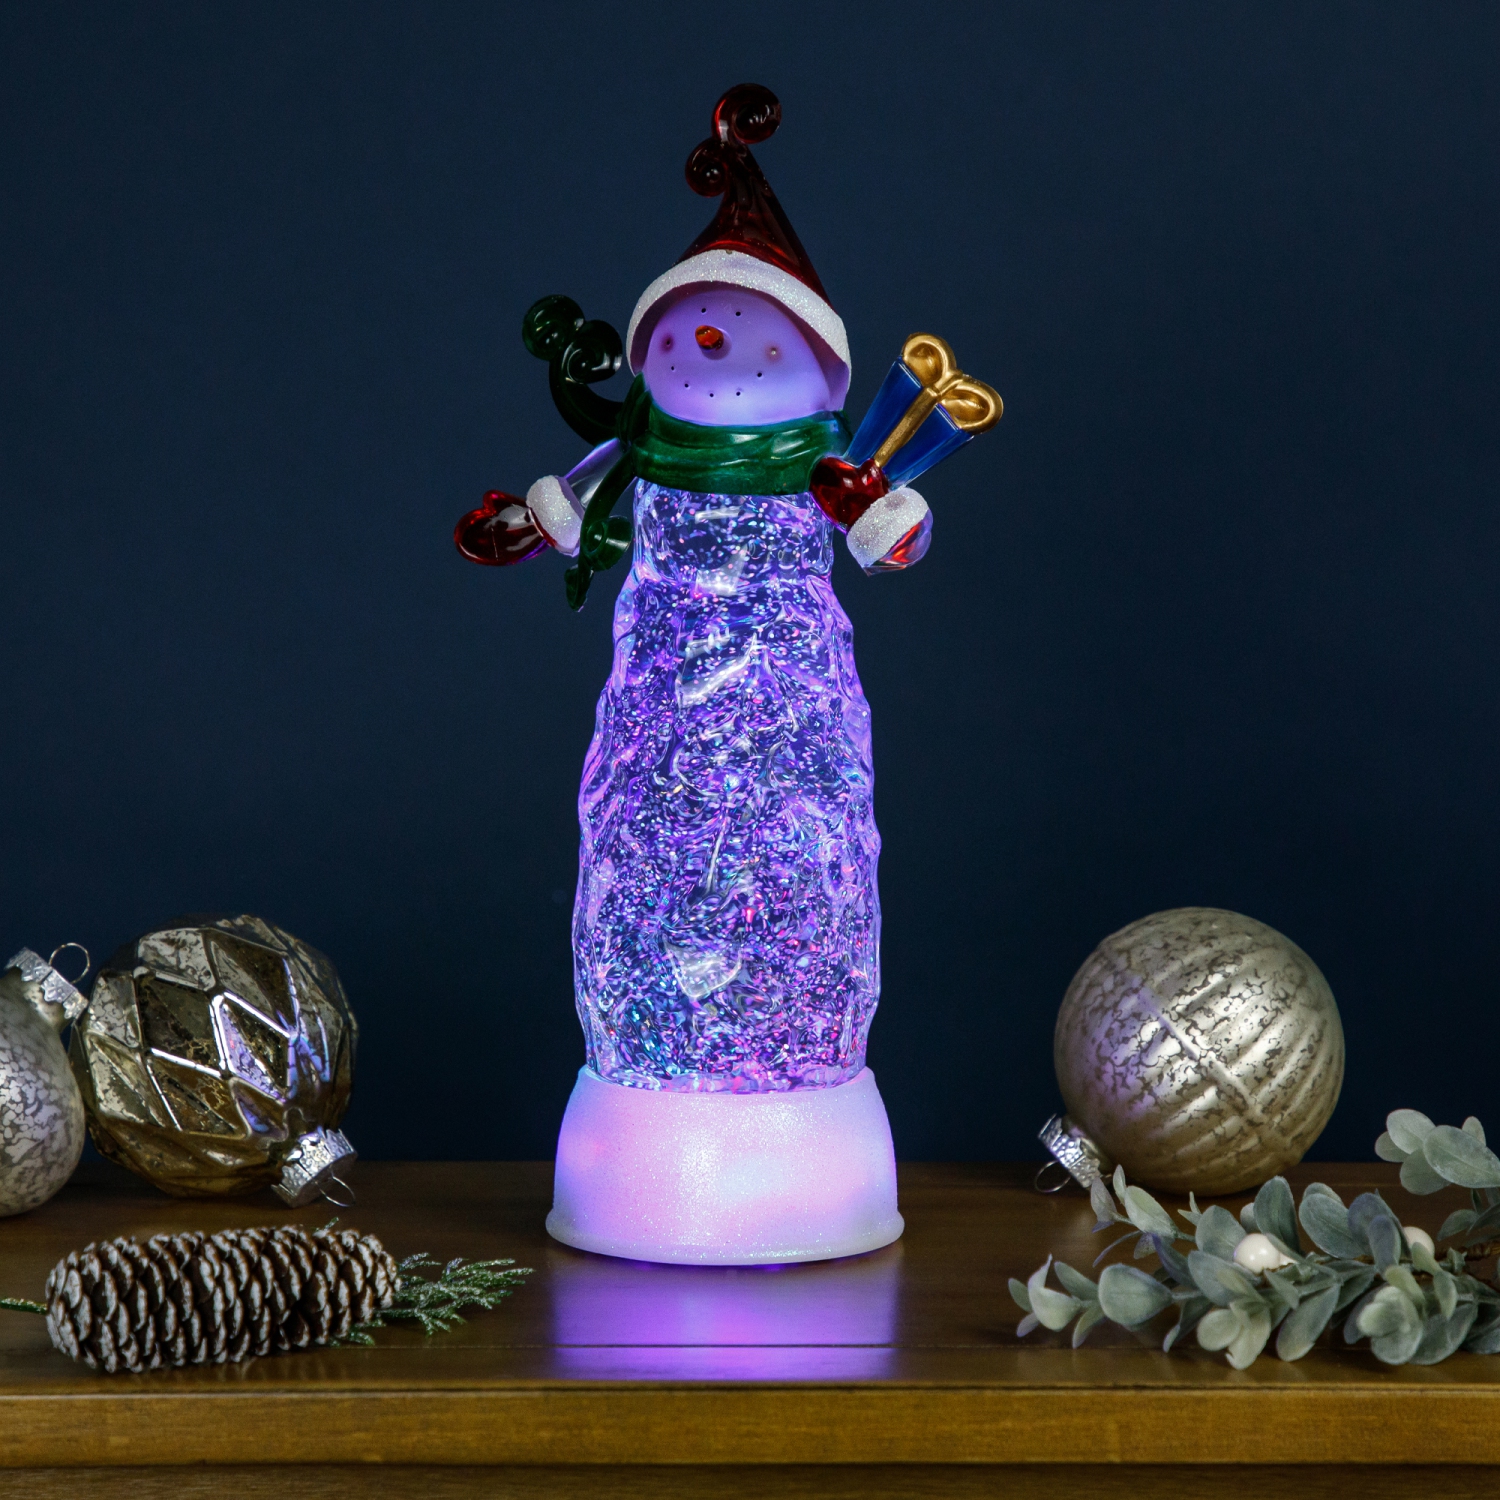 Lighted Wine Bottle With Swirling Glitter Christmas Cheer Design Snow   Lighted wine bottles, Christmas wine bottles, Wine bottle diy crafts